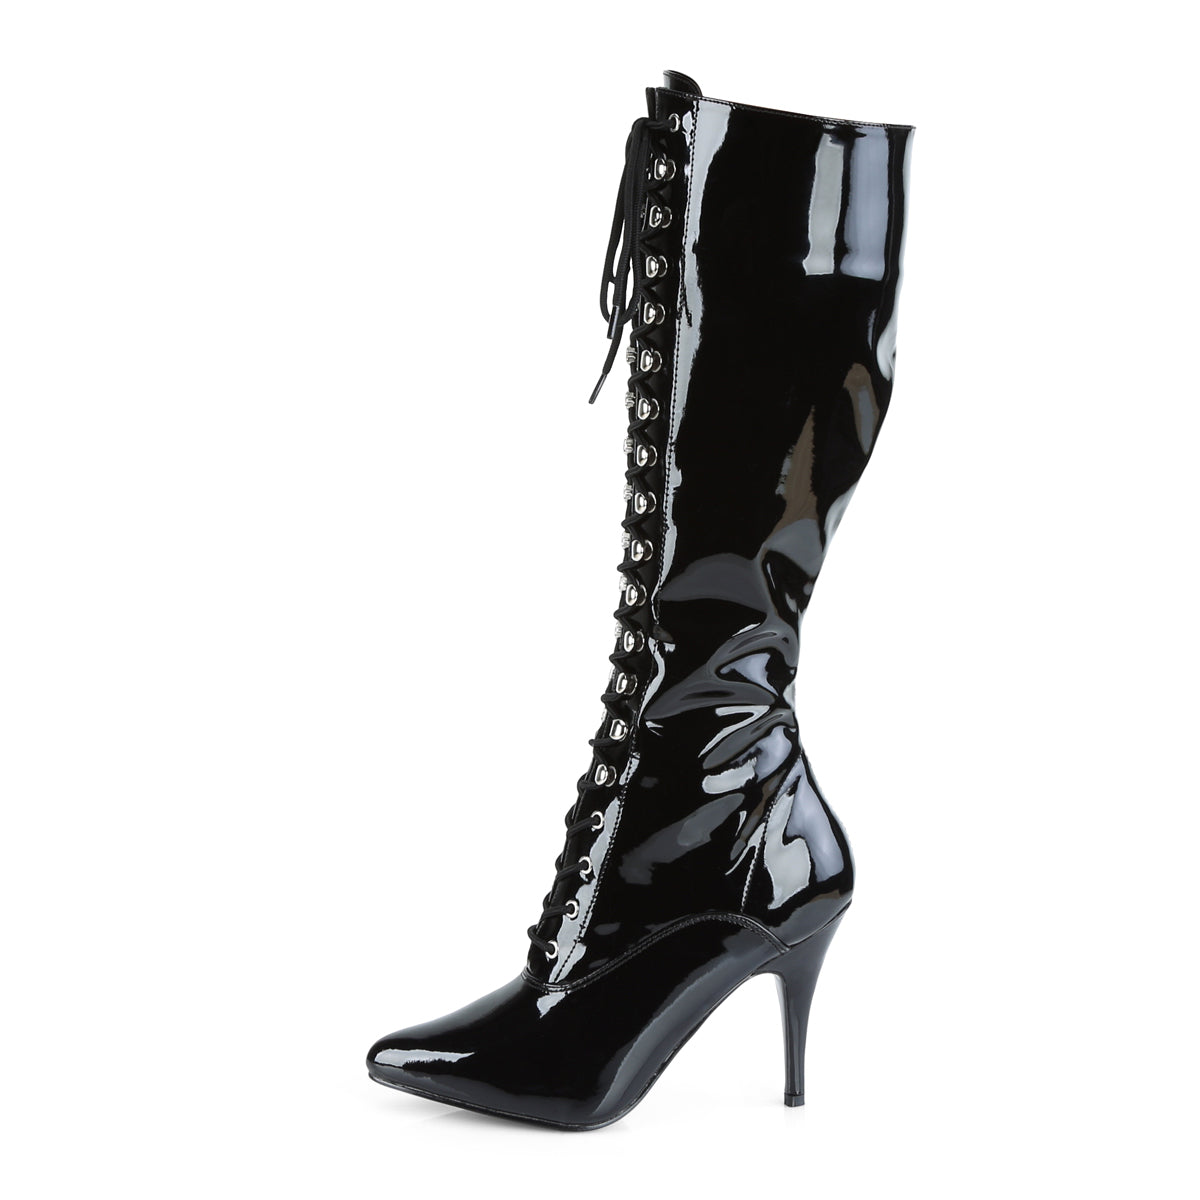 VANITY-2020 Knee Highs 4" Heel Black Patent Fetish Footwear-Pleaser- Sexy Shoes Pole Dance Heels